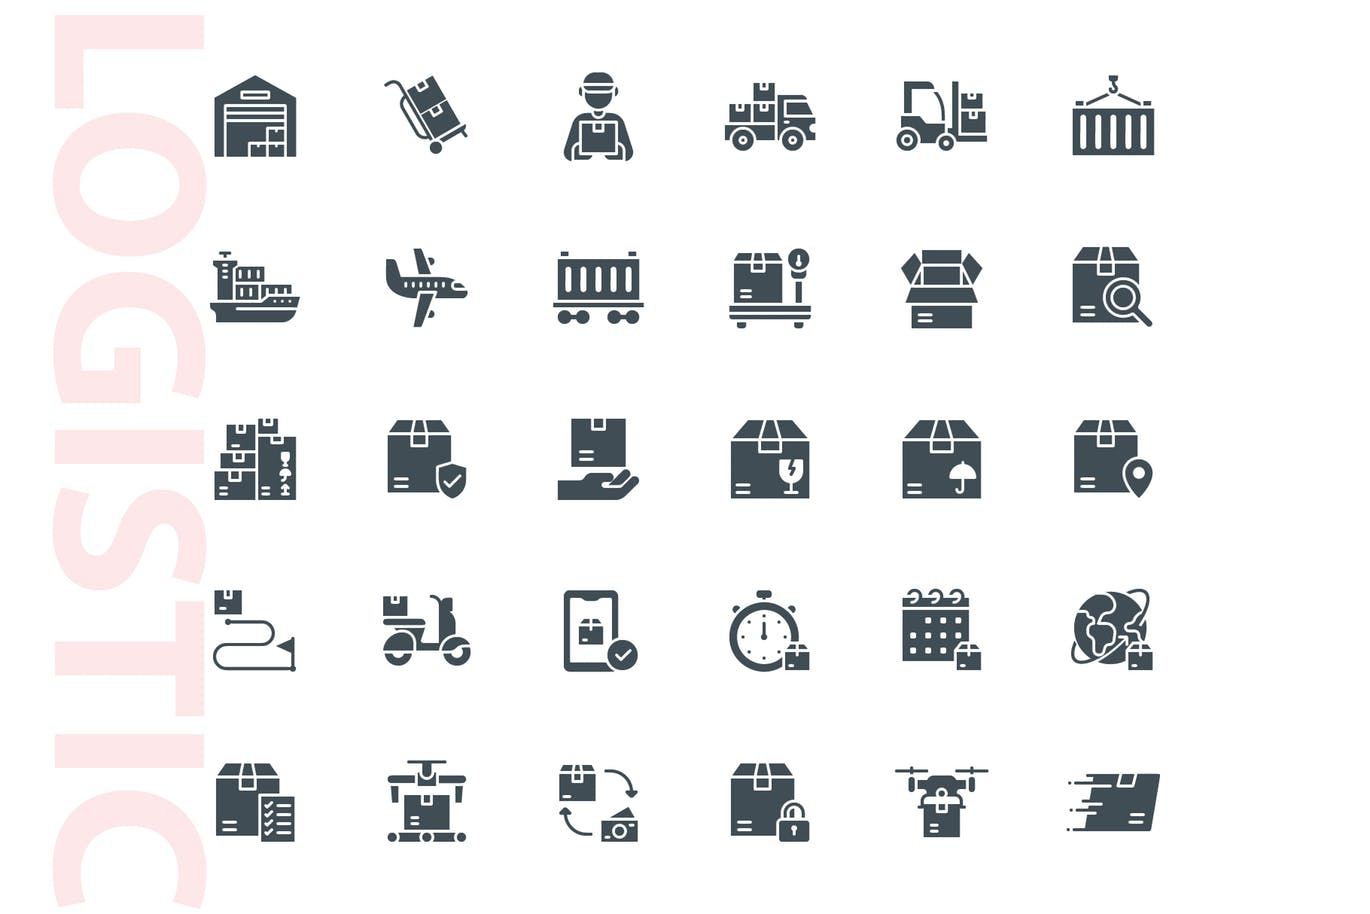 30枚物流运输行业标志符号矢量素材库精选图标 Logistic Glyph插图(3)